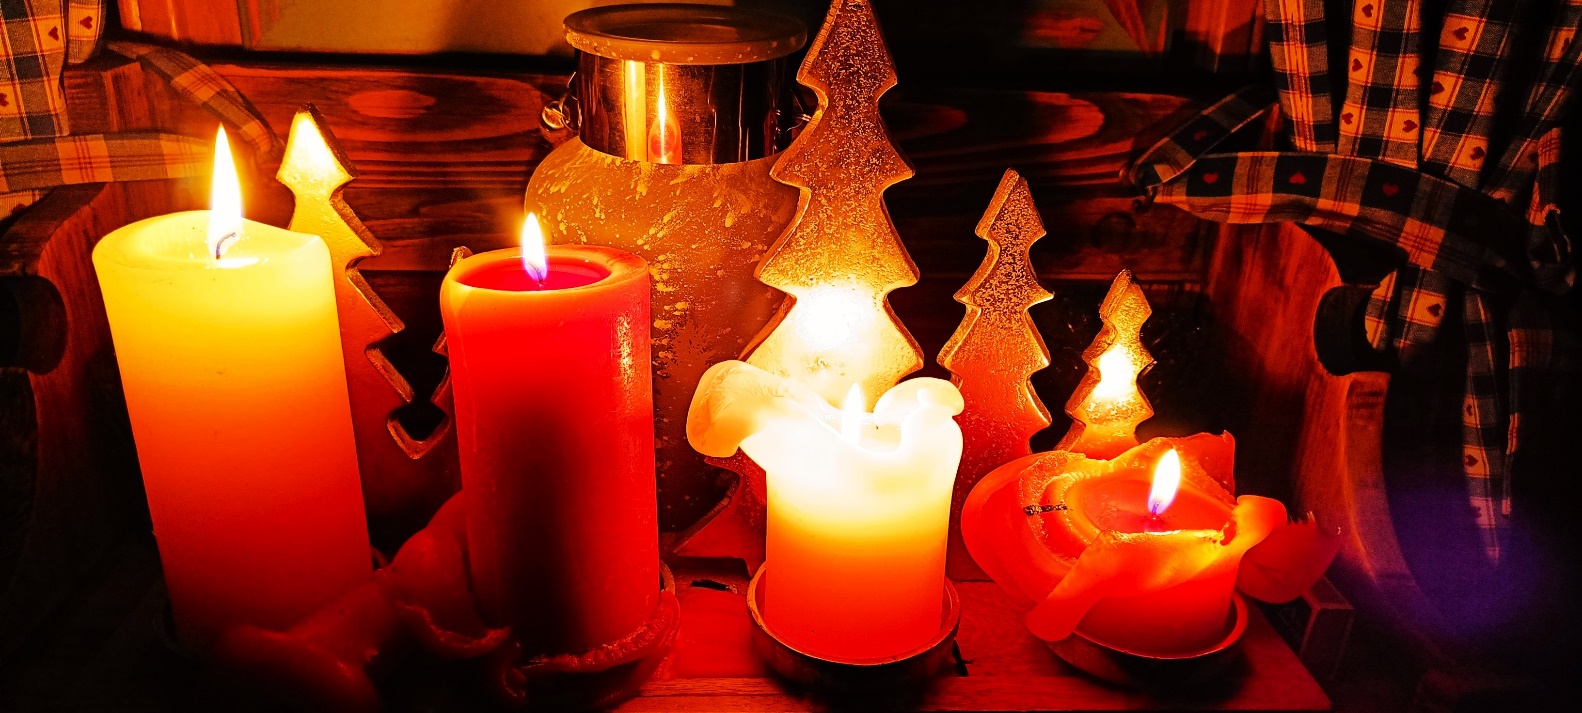 Slika, ki vsebuje besede vosek, sveča, svečnik, razsvetljava

Opis je samodejno ustvarjen